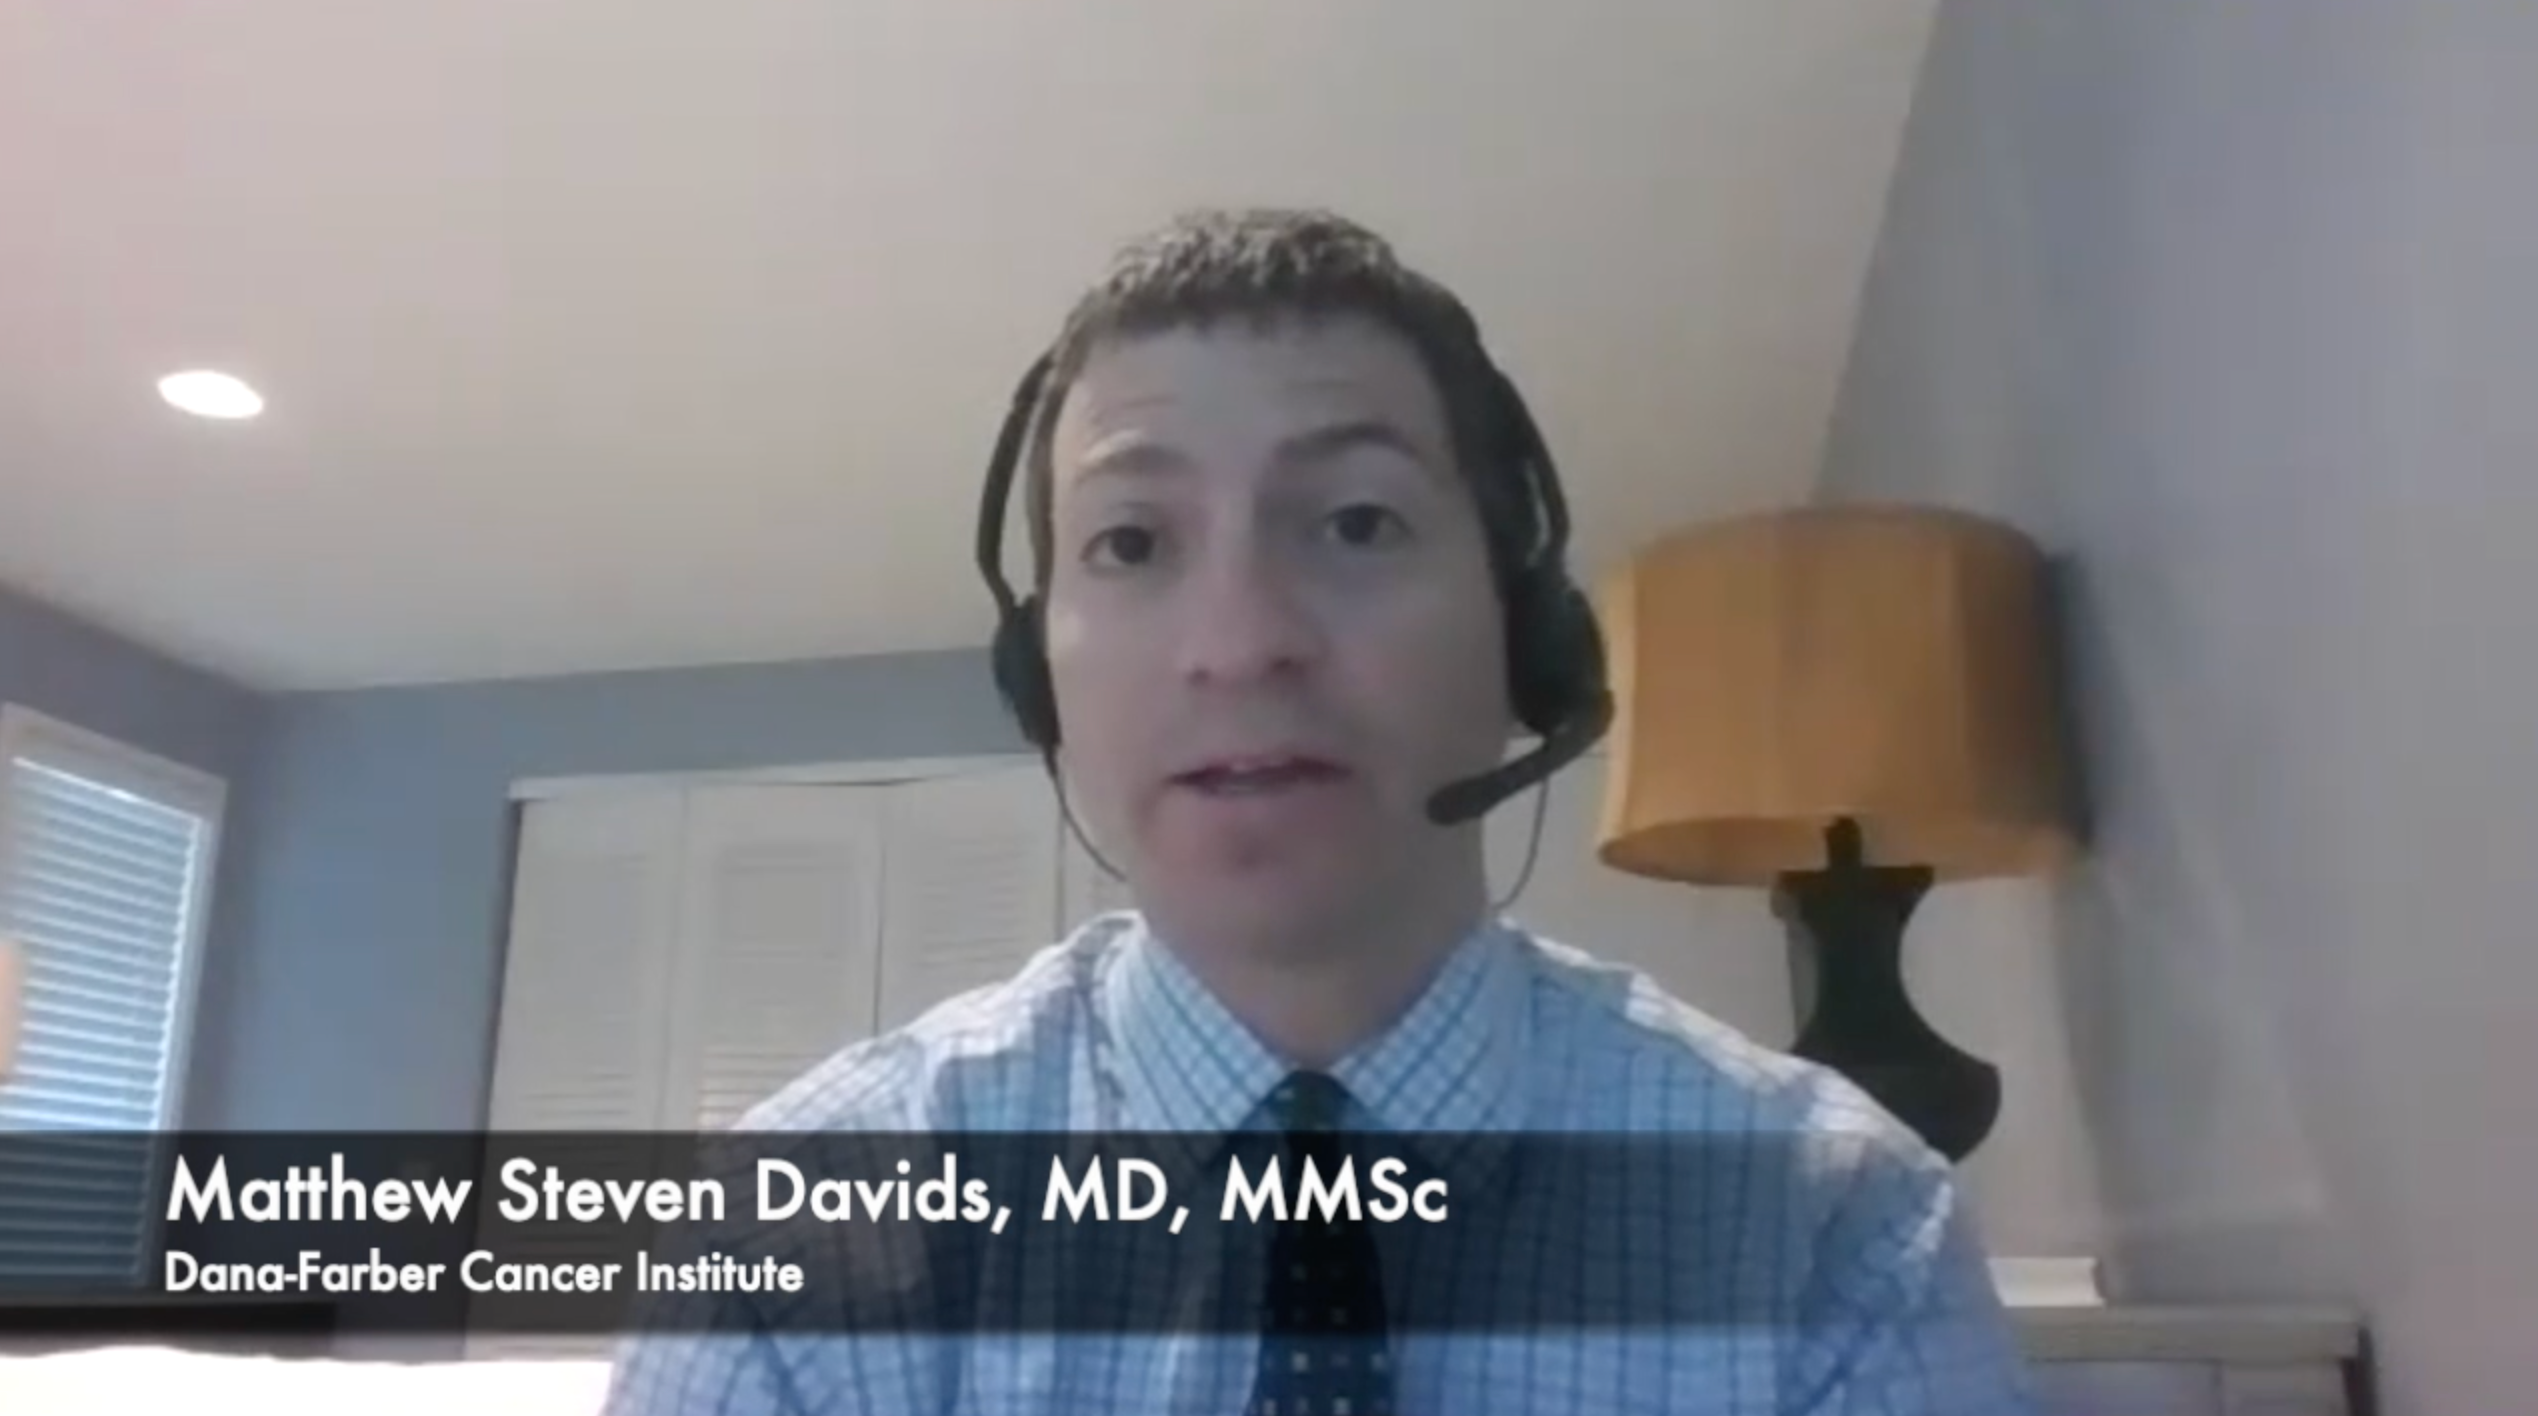 Matthew Steven Davids, MD, MMSc